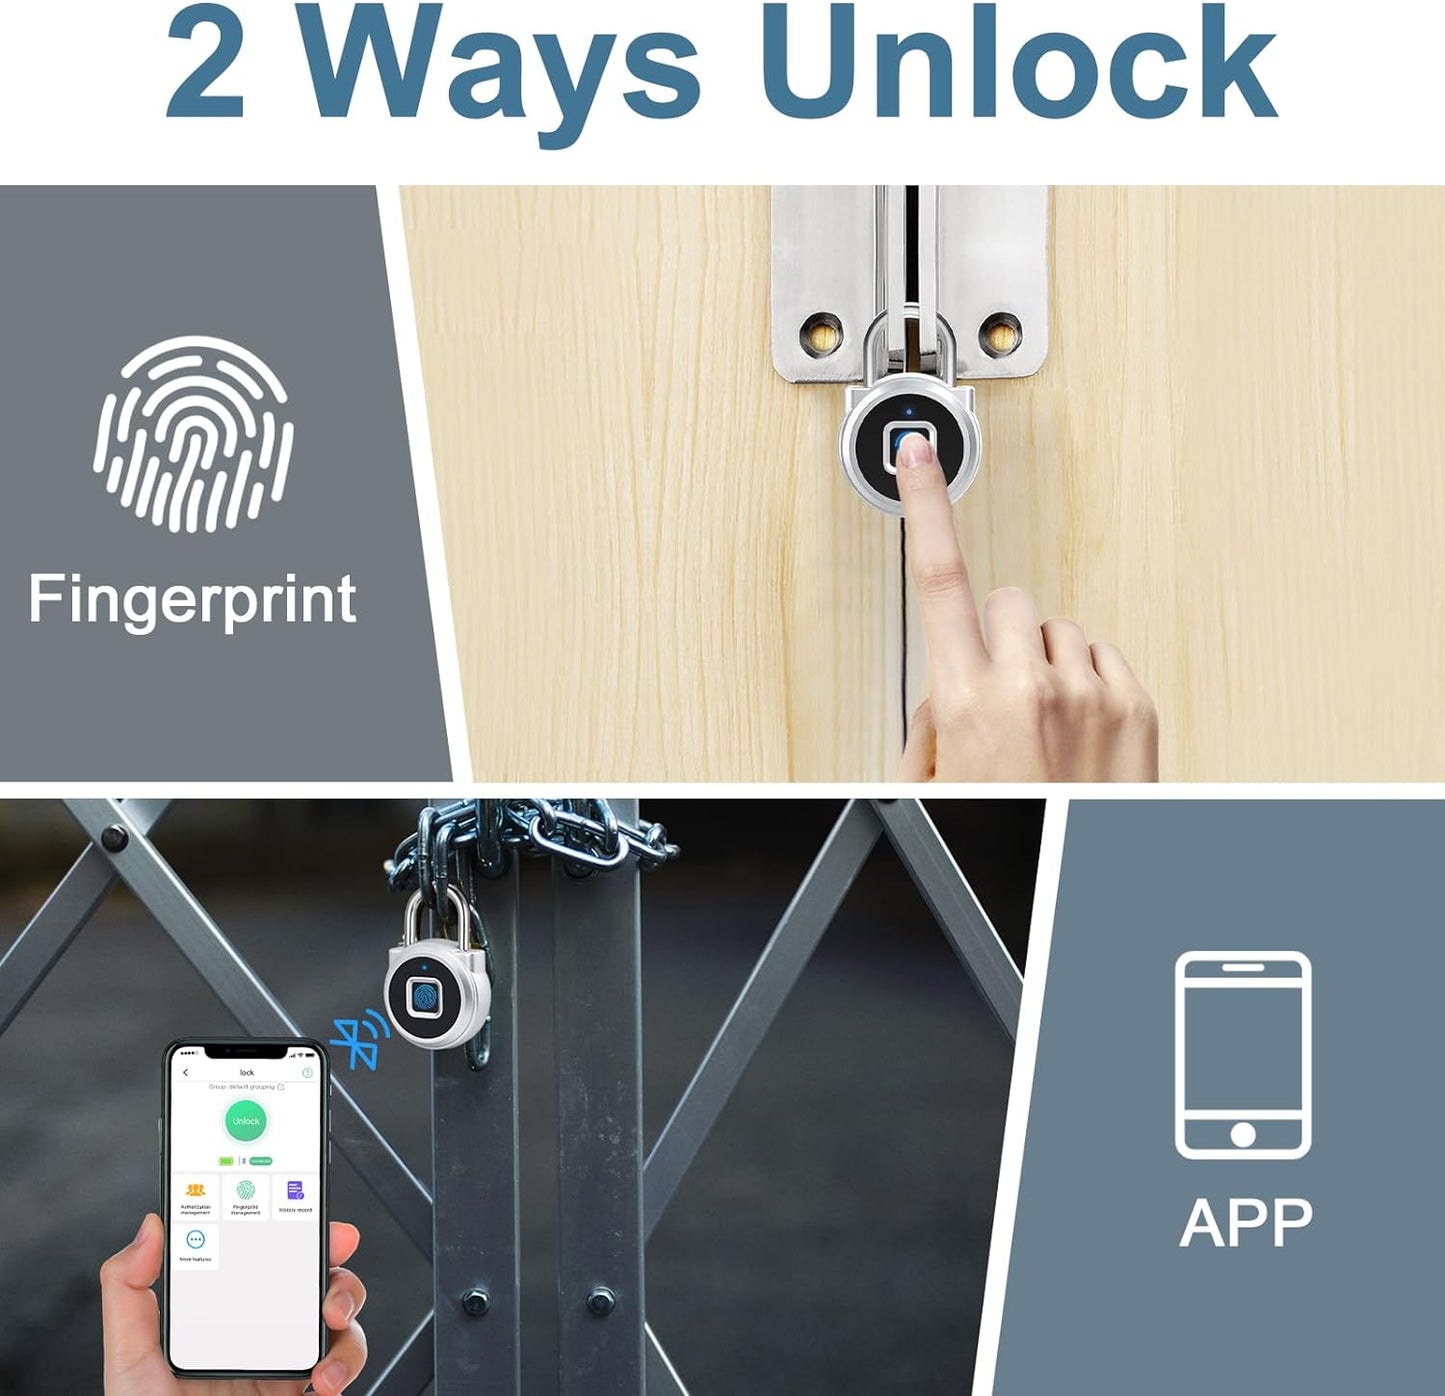 Smart Fingerprint Lock